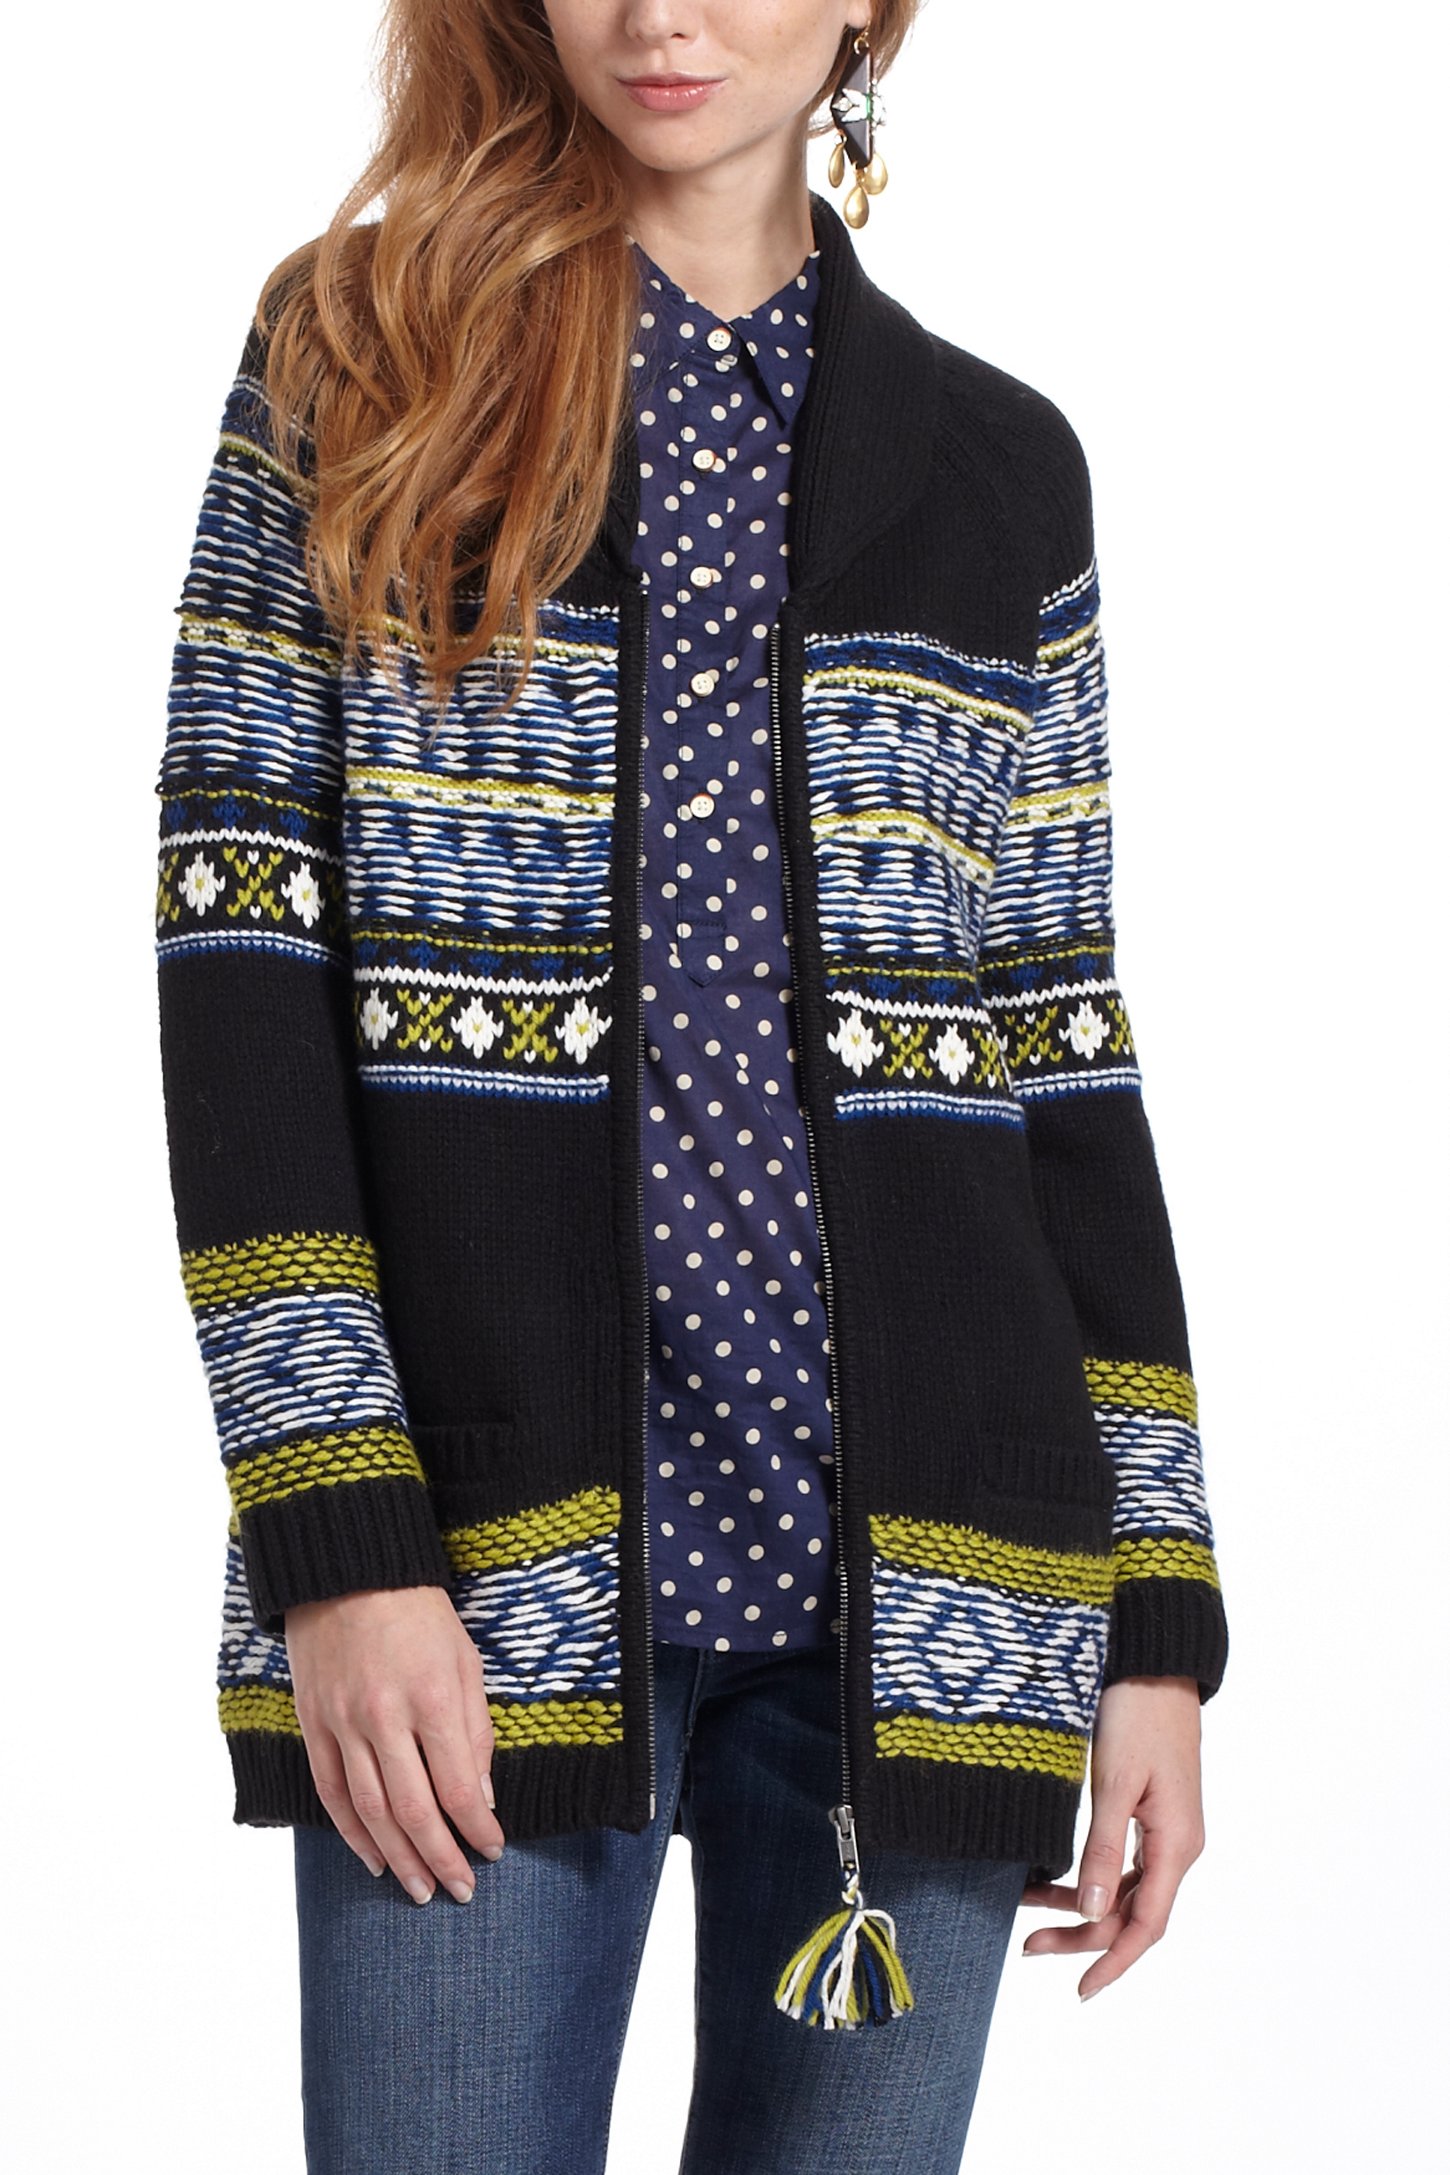 Anthropologie Batley Fairisle Sweatercoat | Lyst